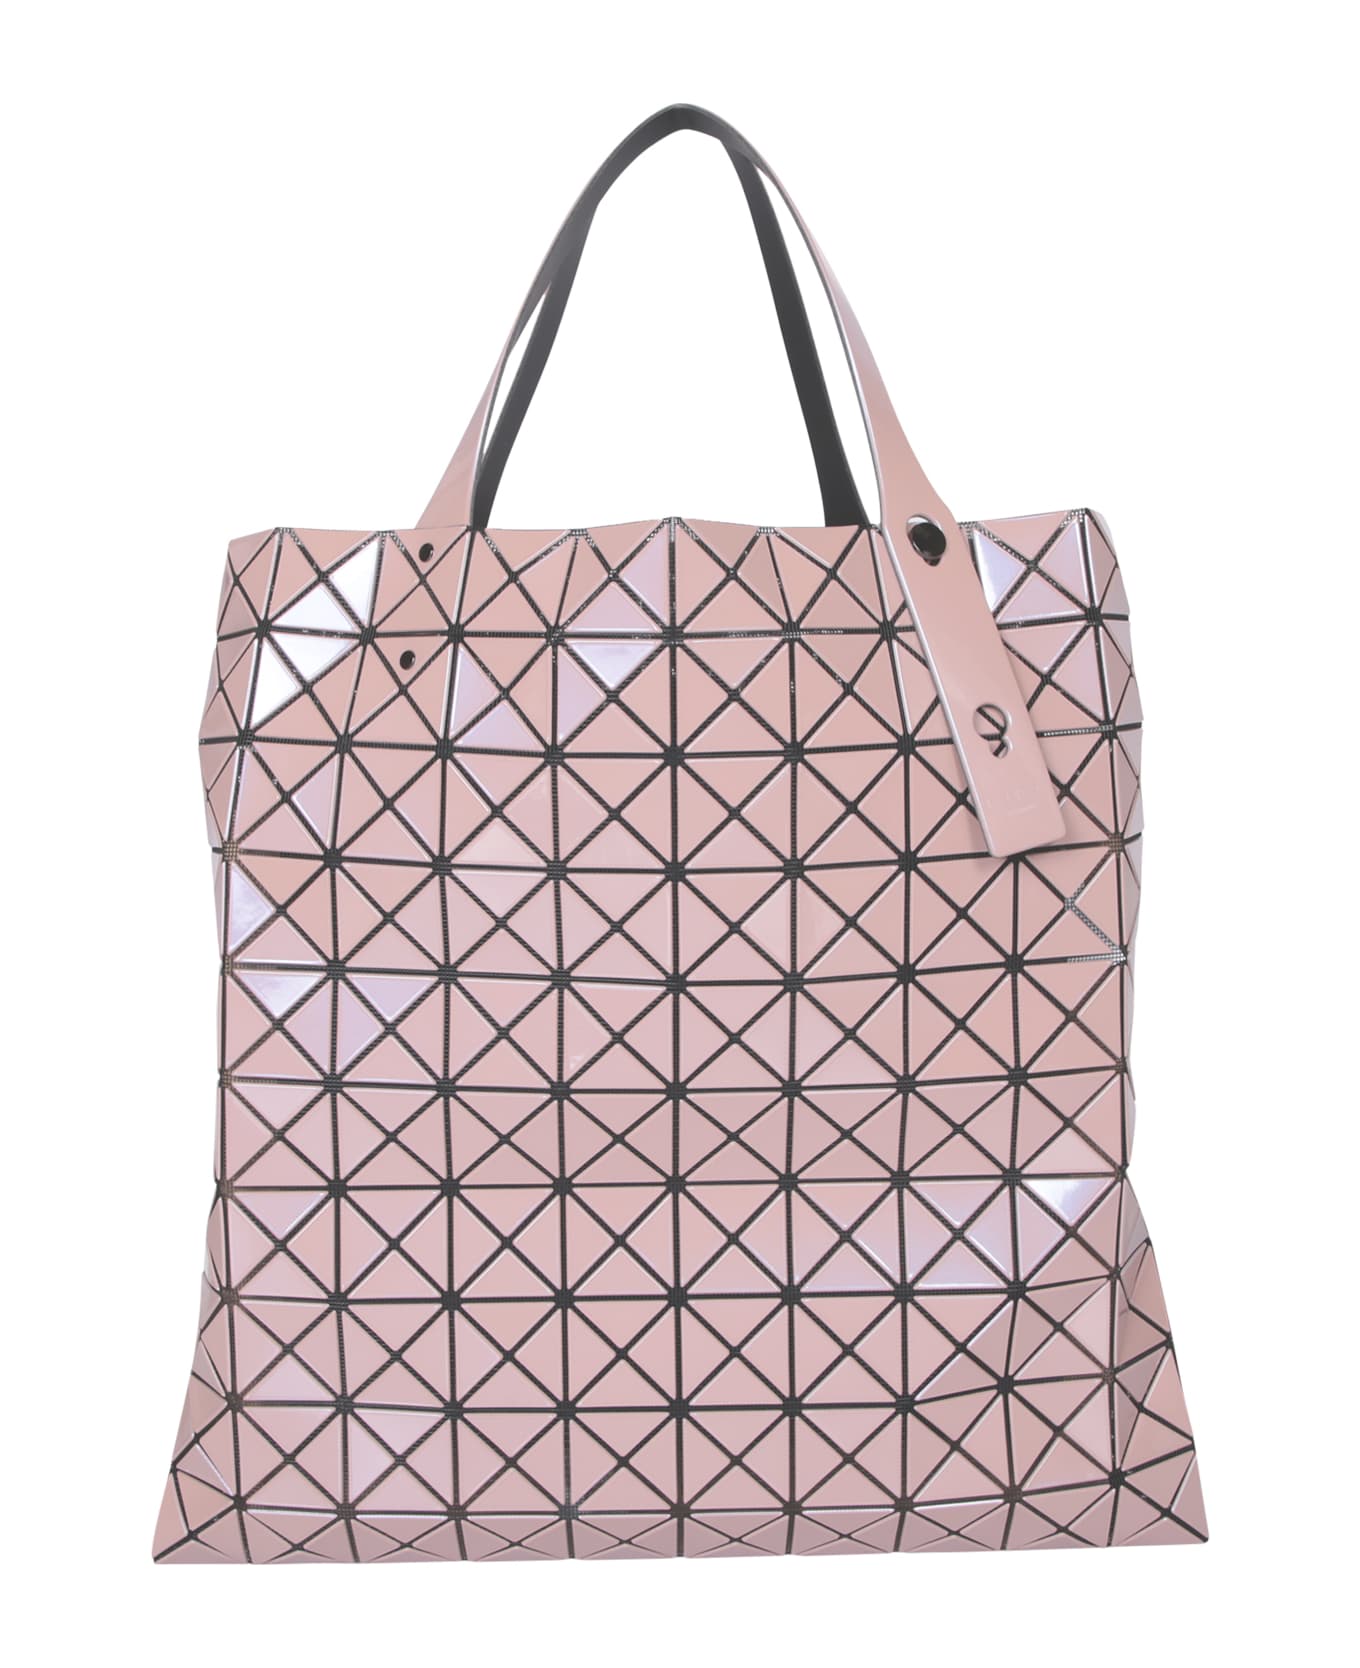 Issey Miyake Prism Metallic Pink Large Bag - Pink